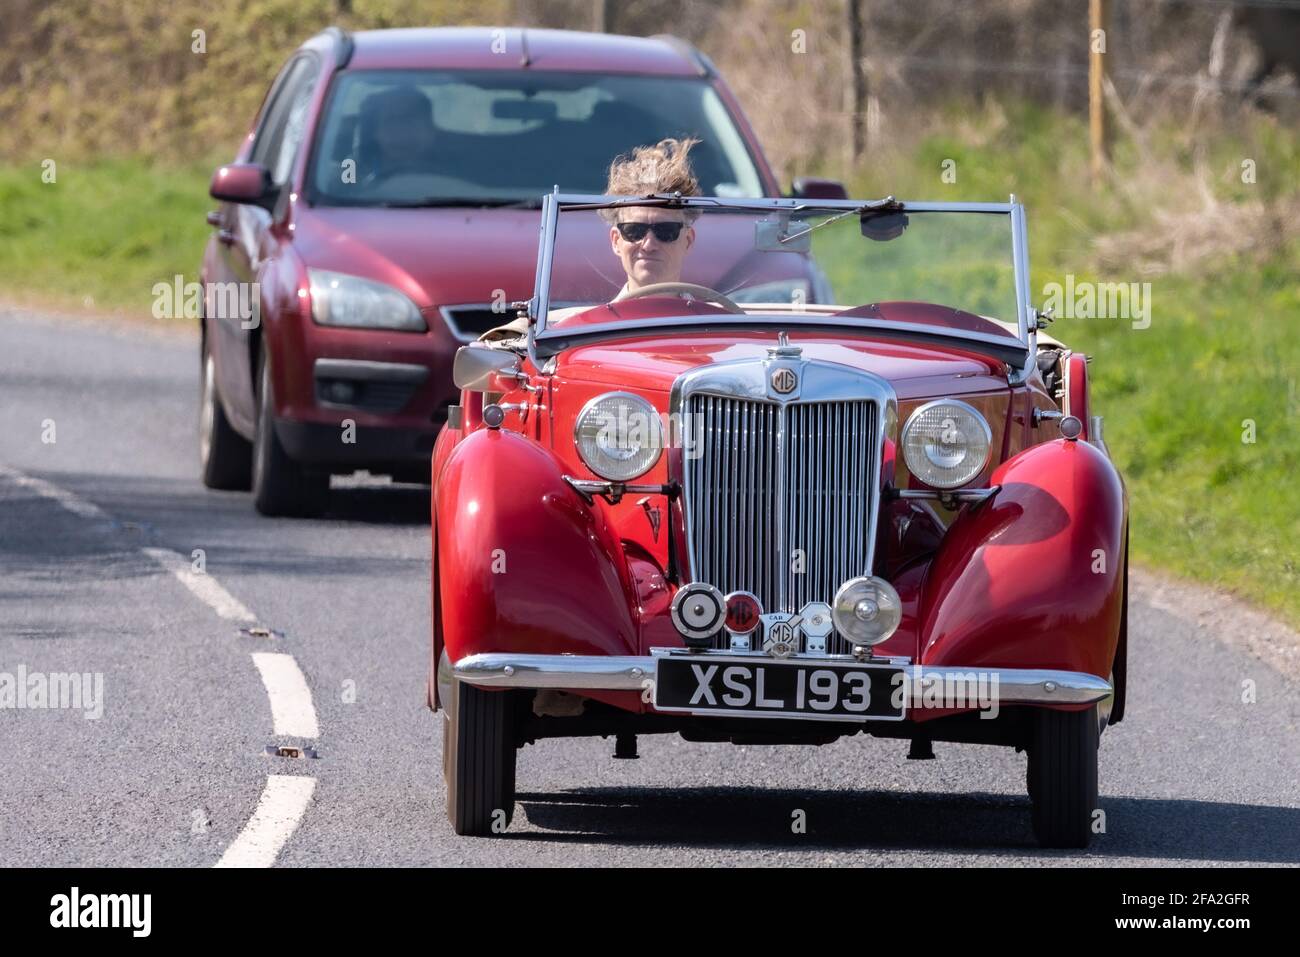 Vento in acconciatura, uomo che guida una classica mg sport auto, Alresford, Hampshire, Regno Unito Foto Stock